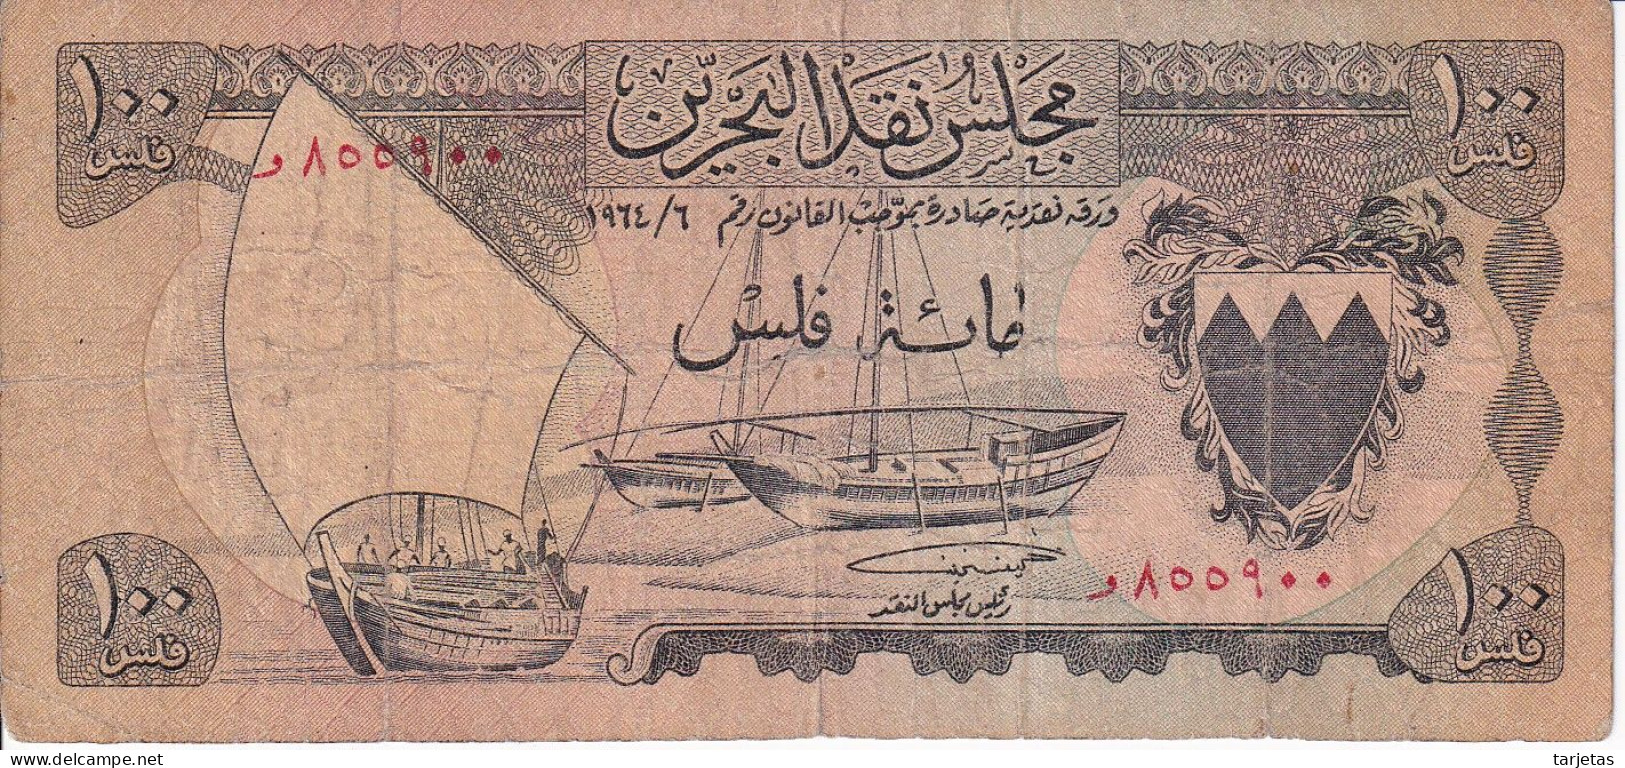 BILLETE DE BAHRAIN DE 100 FILS DEL AÑO 1964 (BANKNOTE) - Bahrain